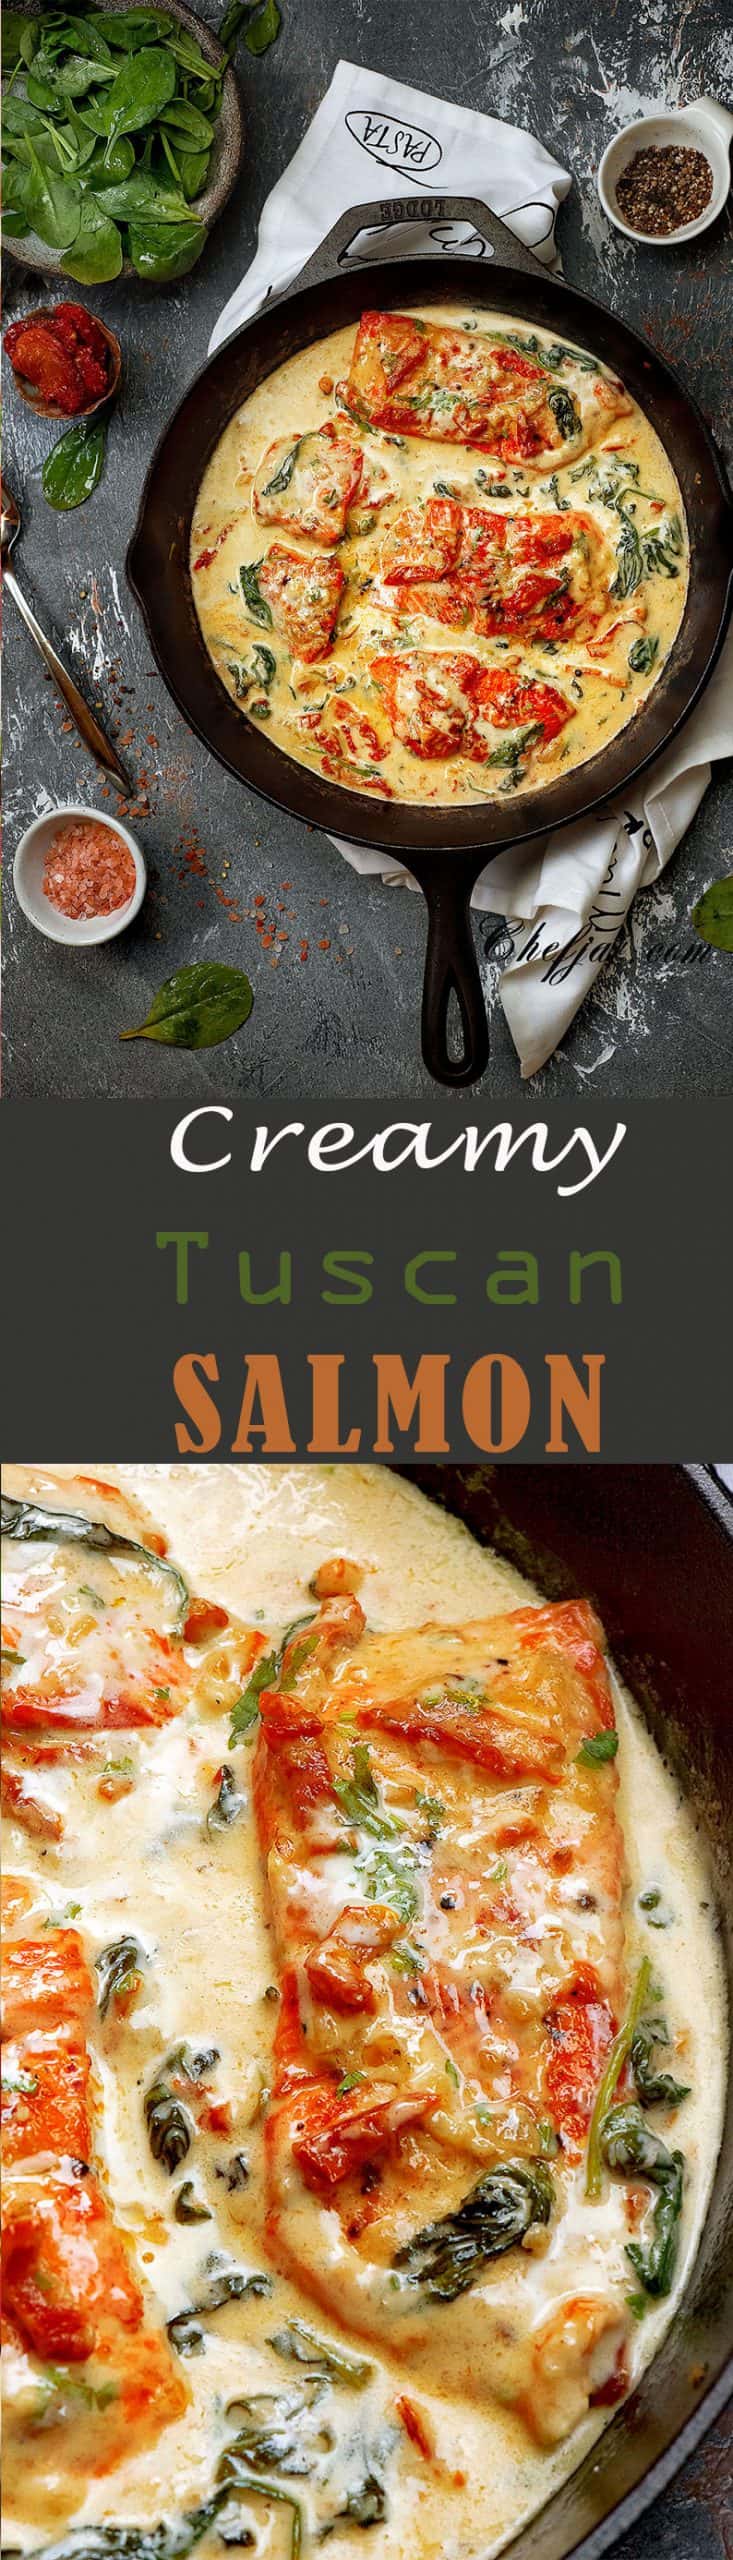 Tuscan-salmon